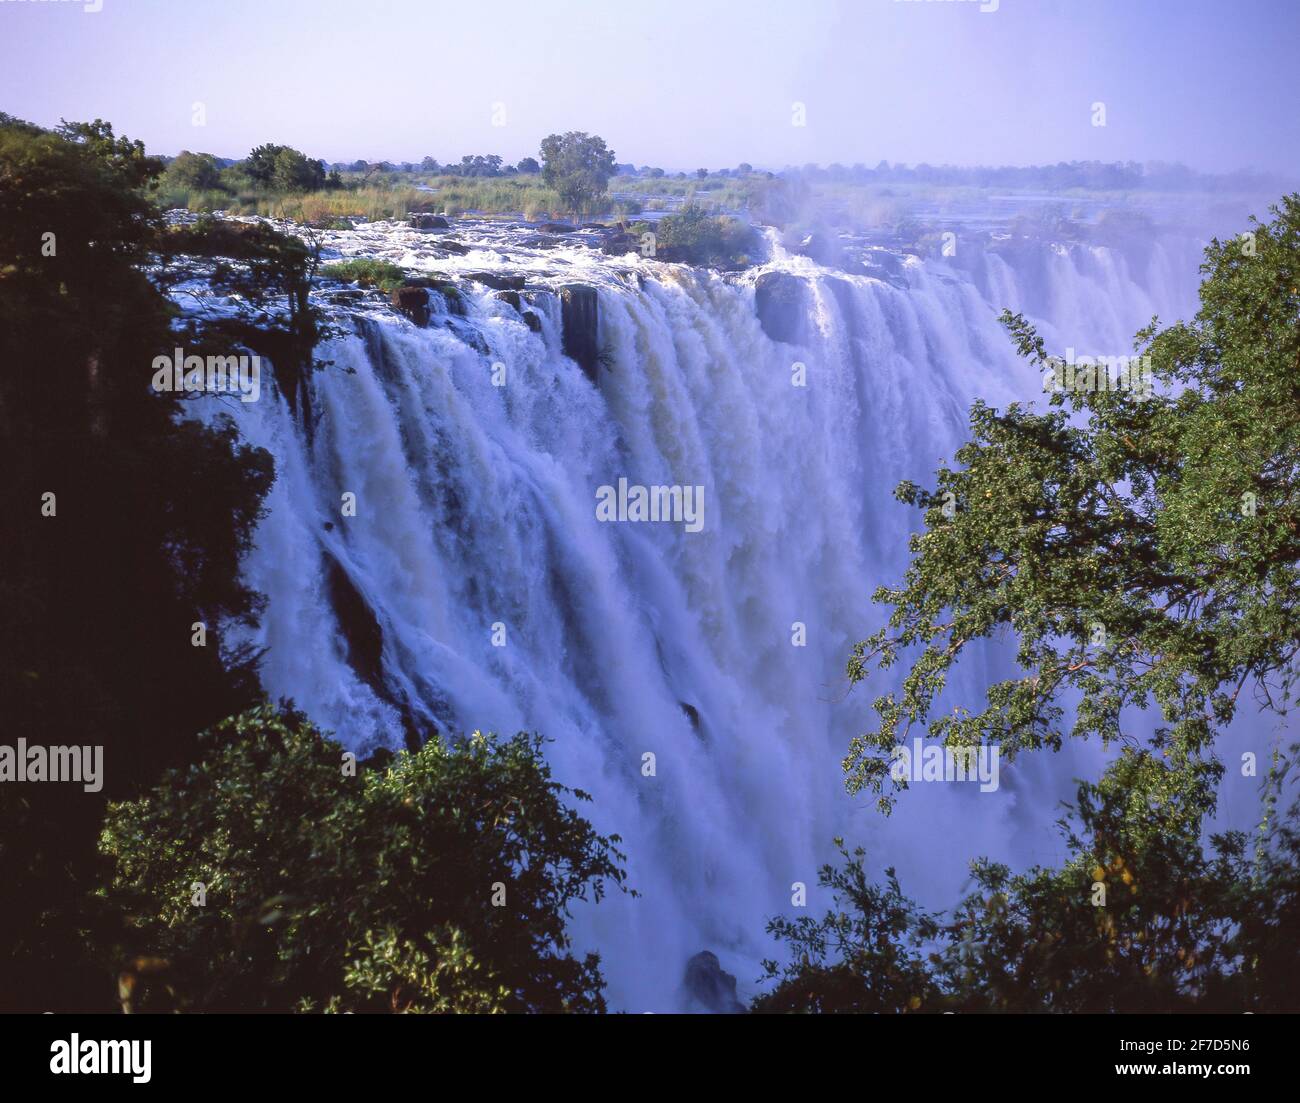 Victoria Falls, Livingstone, Southern Province, Republic of Zambia Stock Photo